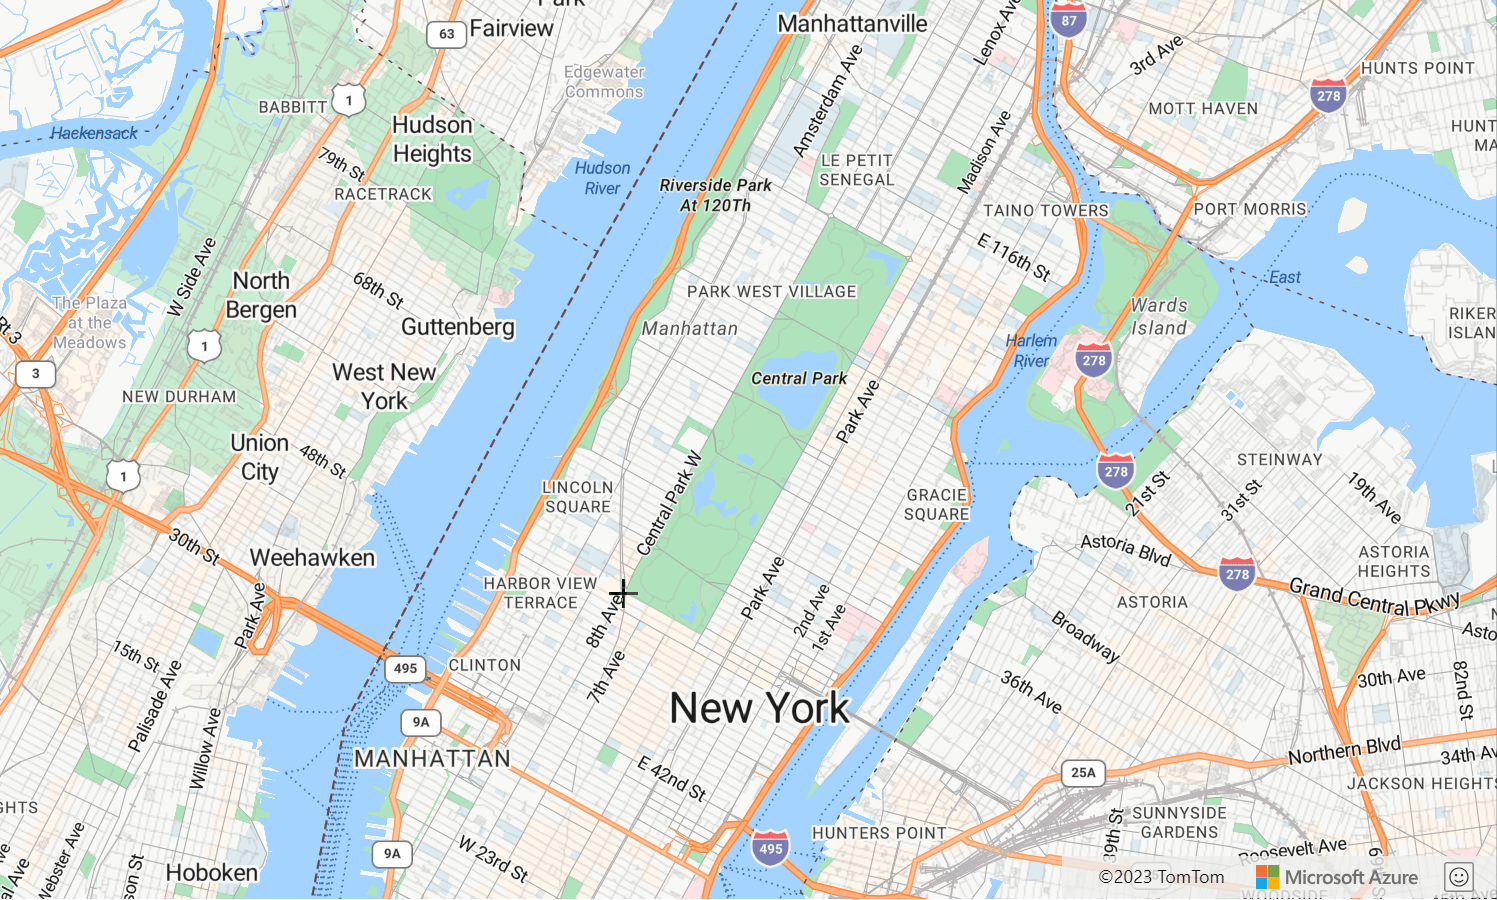 Captura de pantalla de un mapa que muestra el parque Central Park de la ciudad de Nueva York, donde se muestra el administrador de dibujo dibujando una línea.